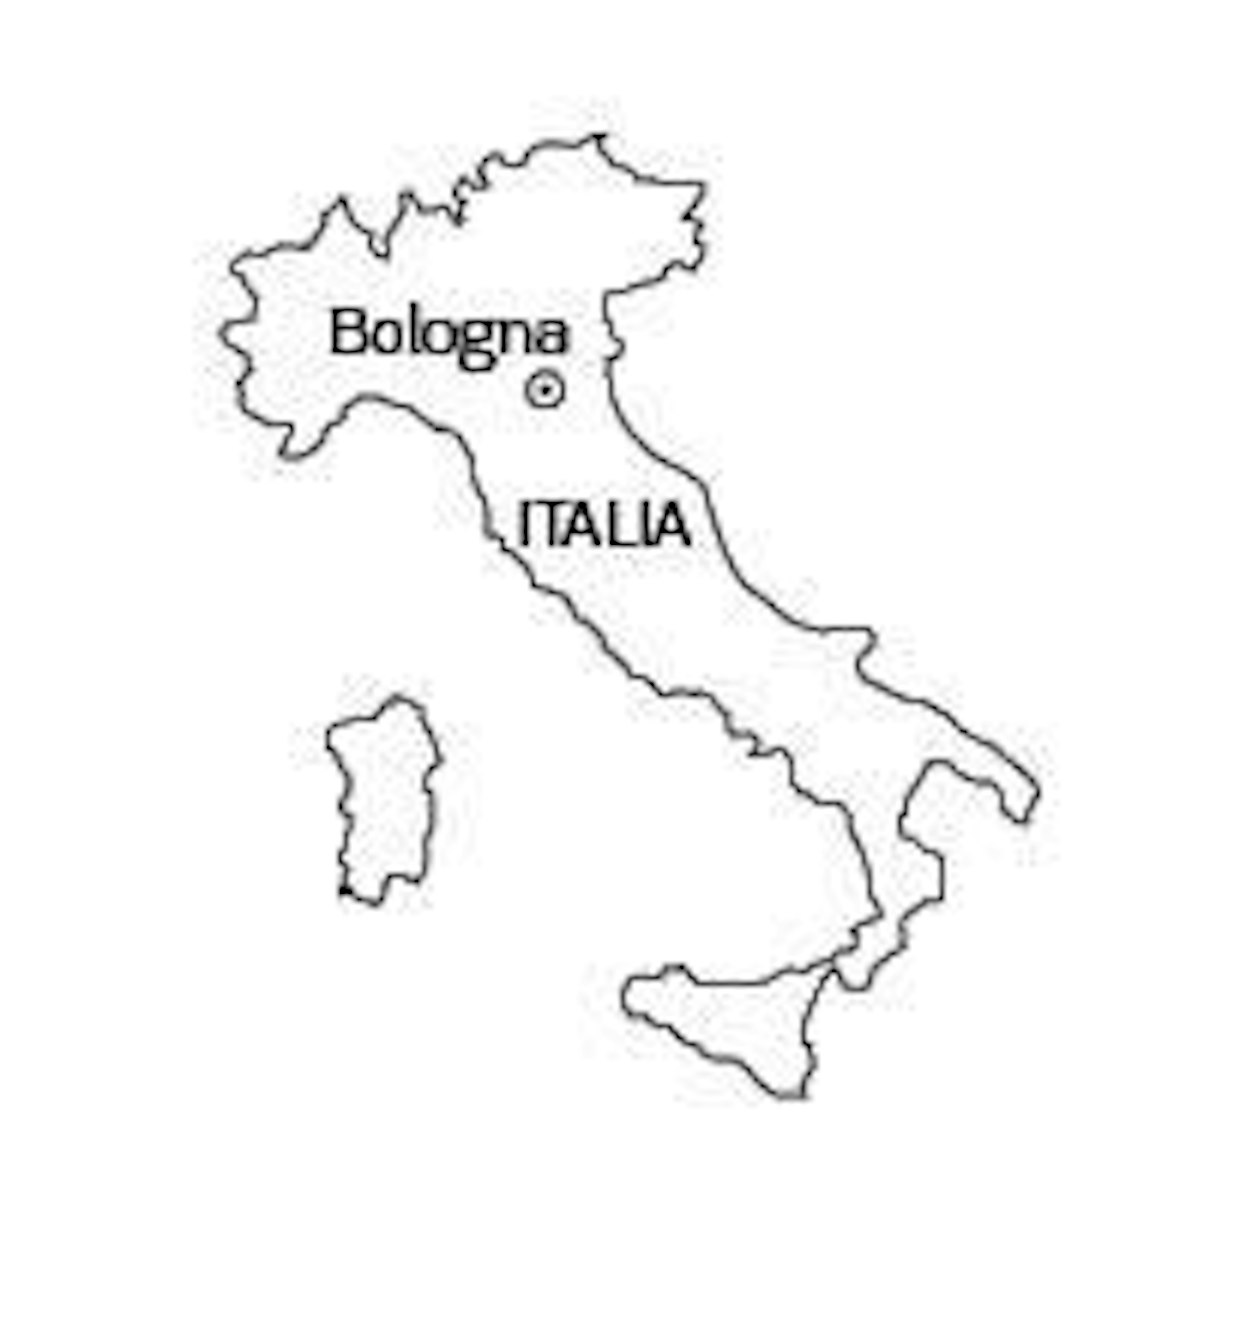 Eima 2014 Bologna, Italia – Eimassa uusi kävijäennätys - Yritykset ja  tapahtumat - Koneviesti